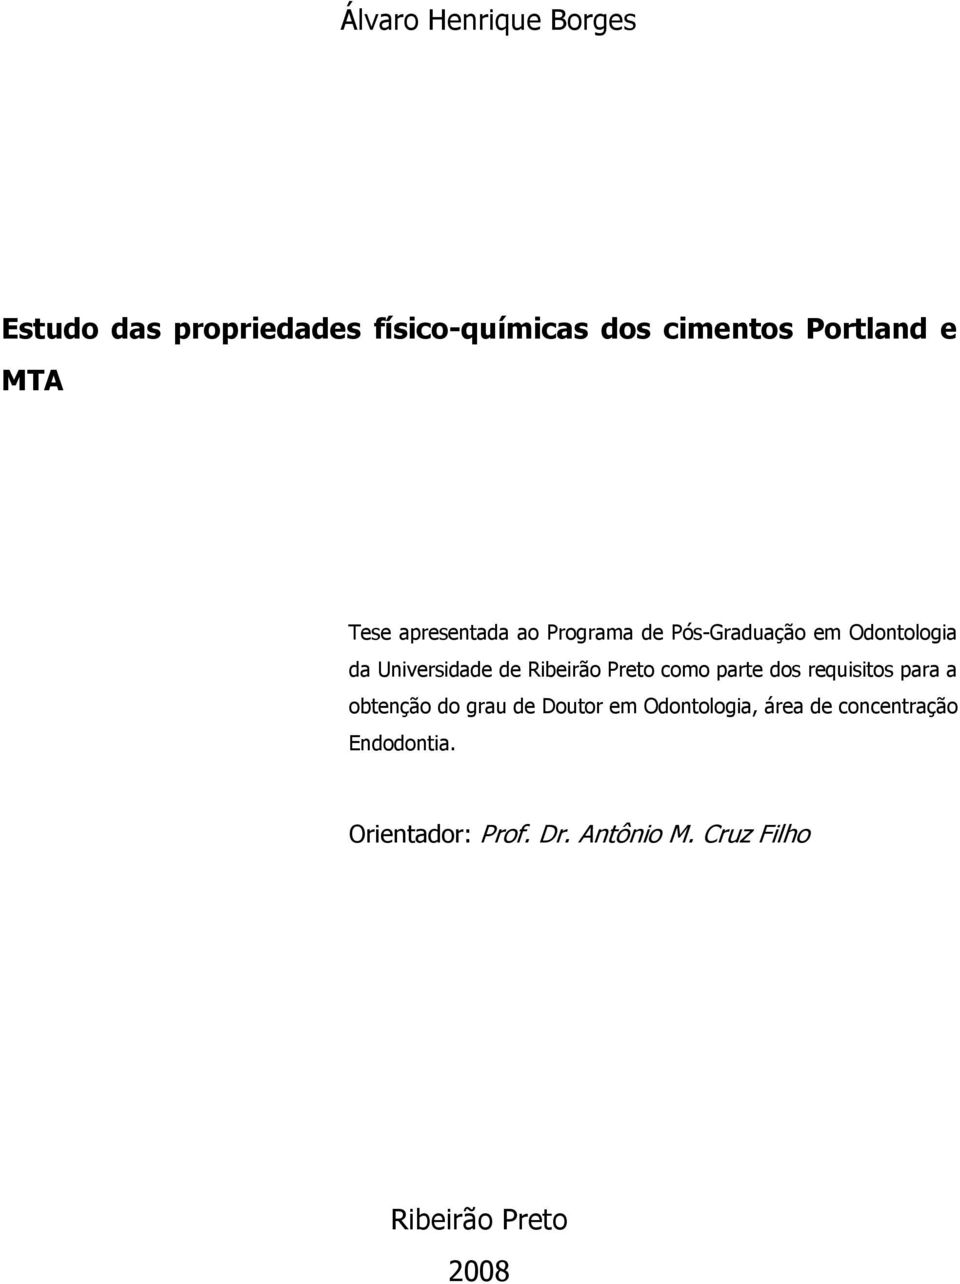 Ribeirão Preto como parte dos requisitos para a obtenção do grau de Doutor em